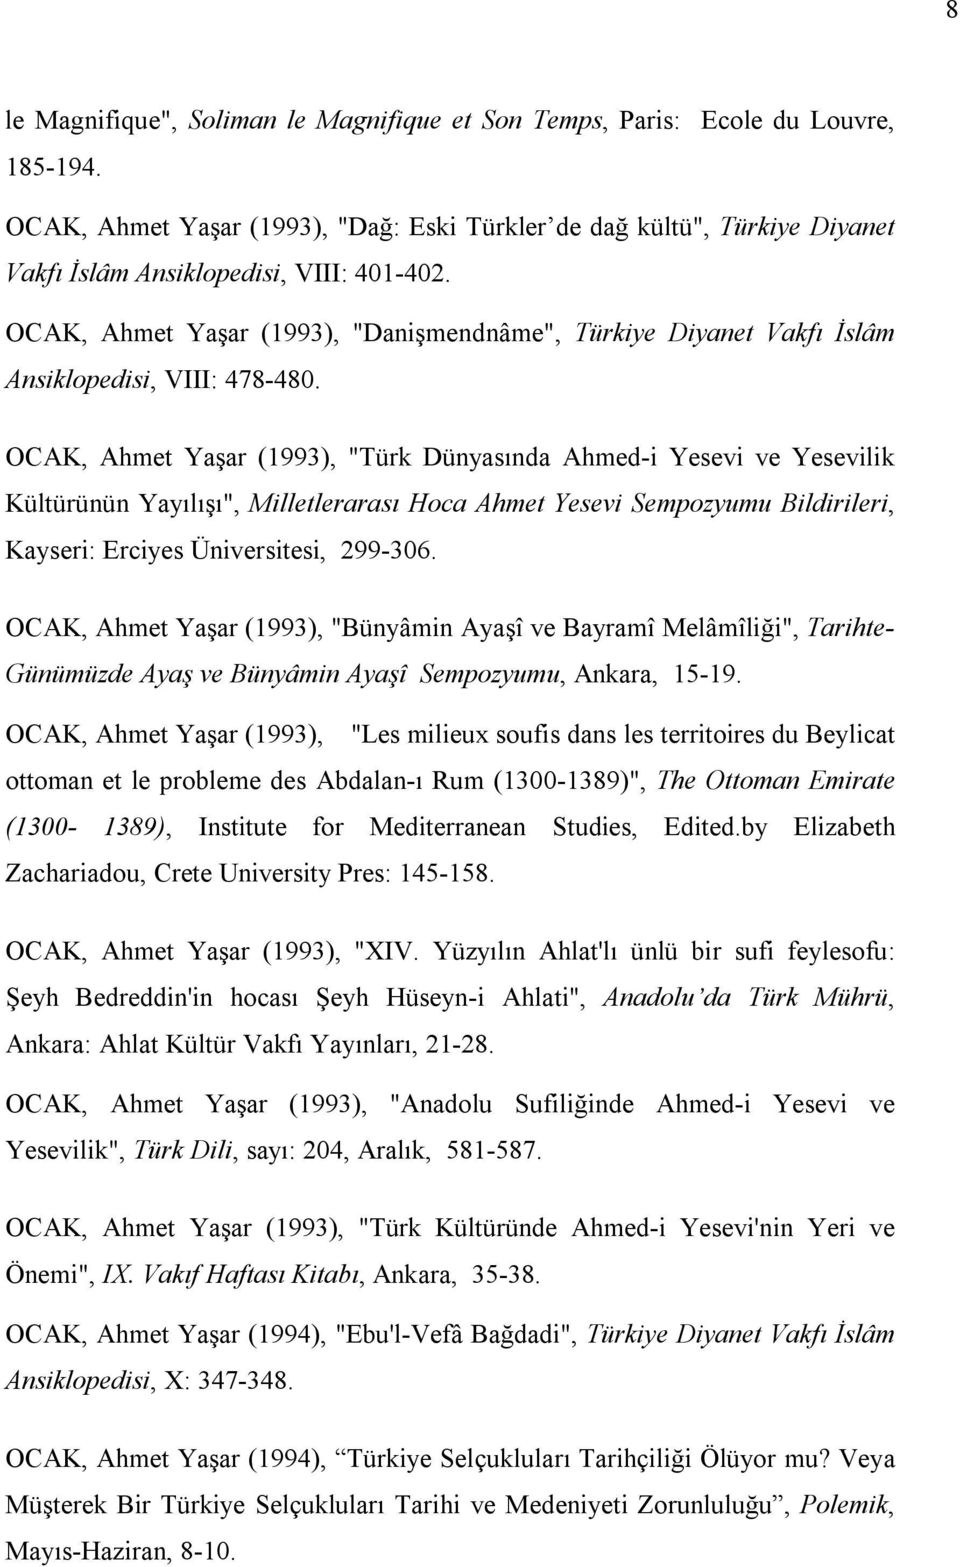 OCAK, Ahmet Yaşar (1993), "Danişmendnâme", Türkiye Diyanet Vakfı İslâm Ansiklopedisi, VIII: 478-480.